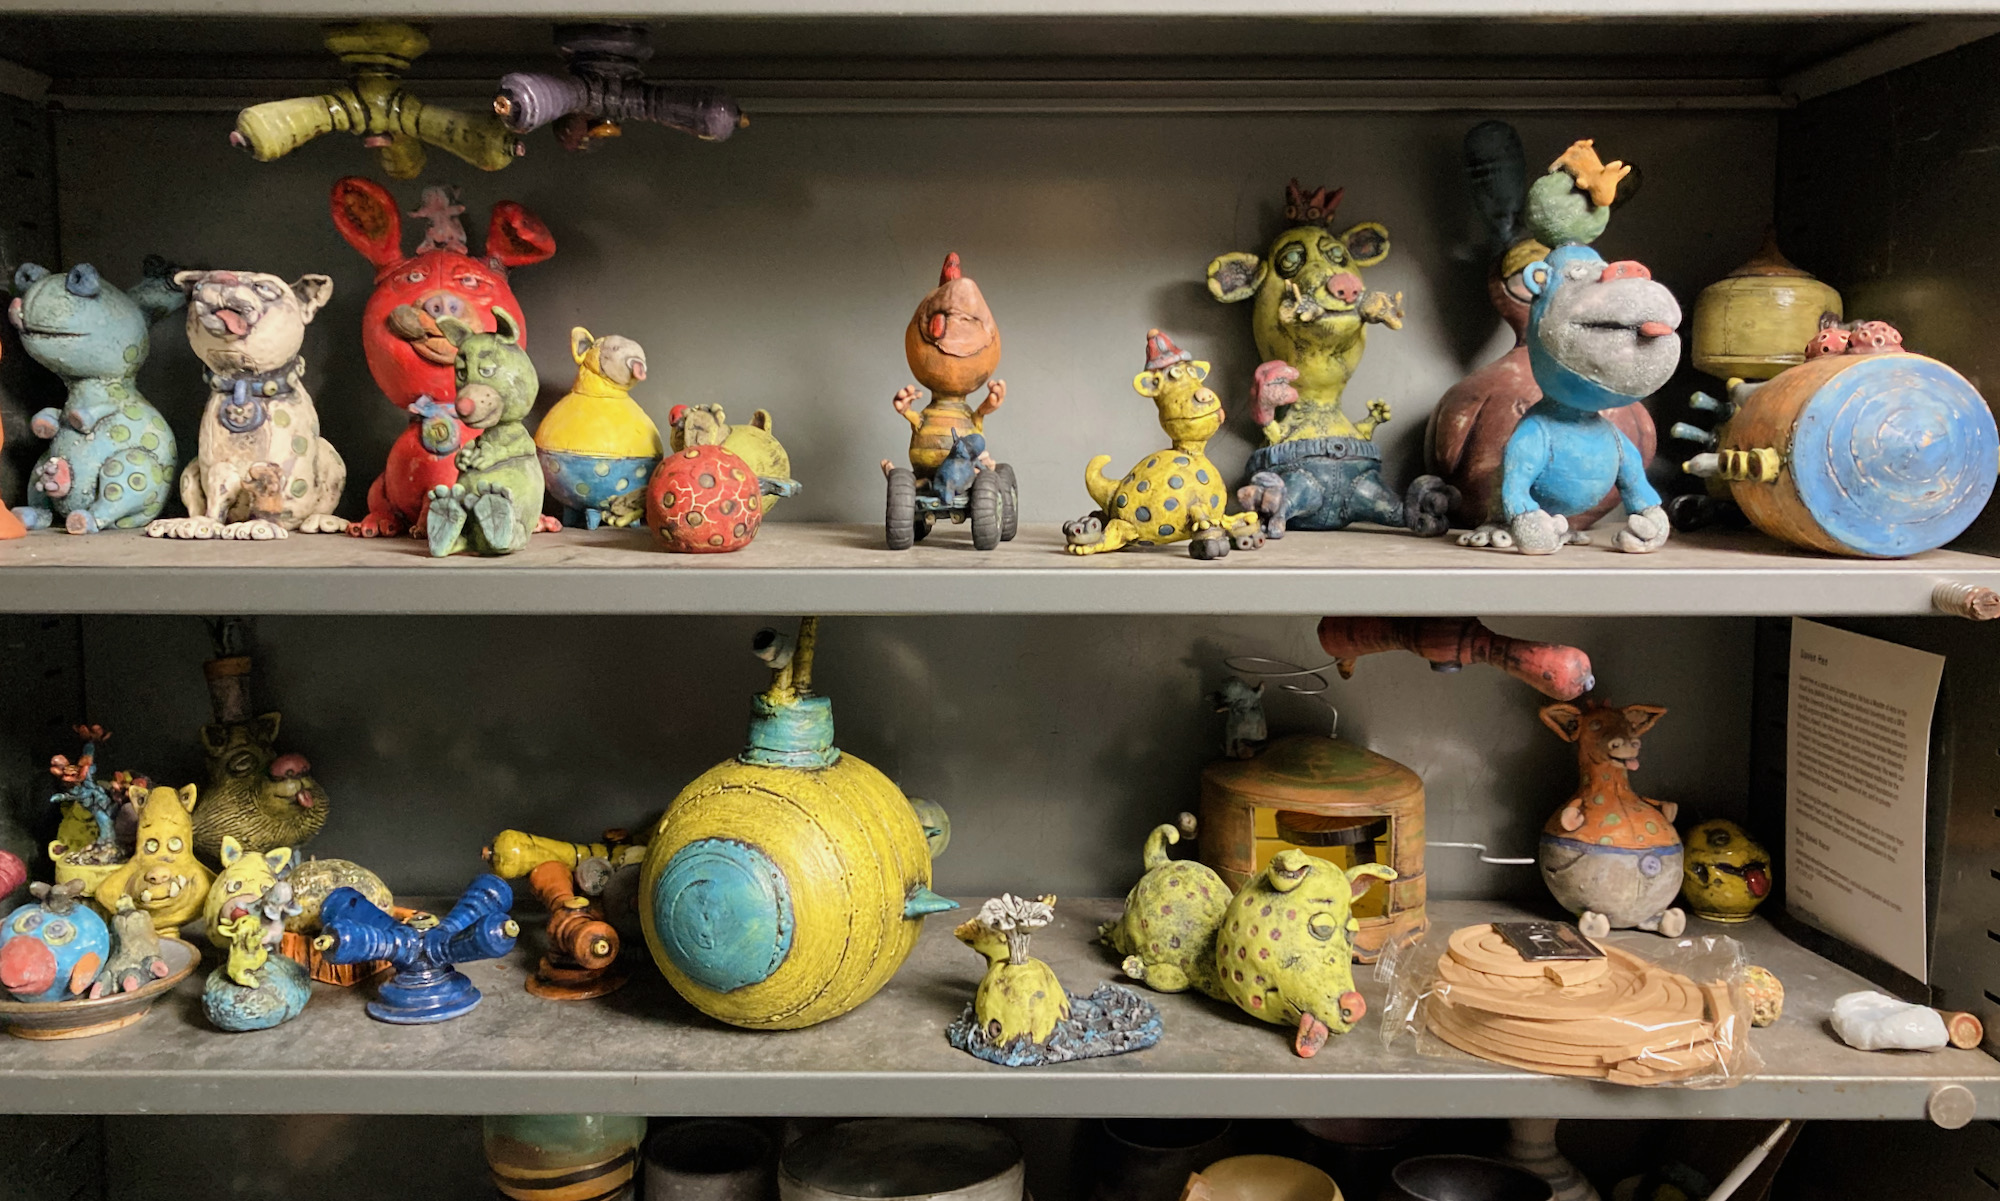 shelves with handmade ceramic toys